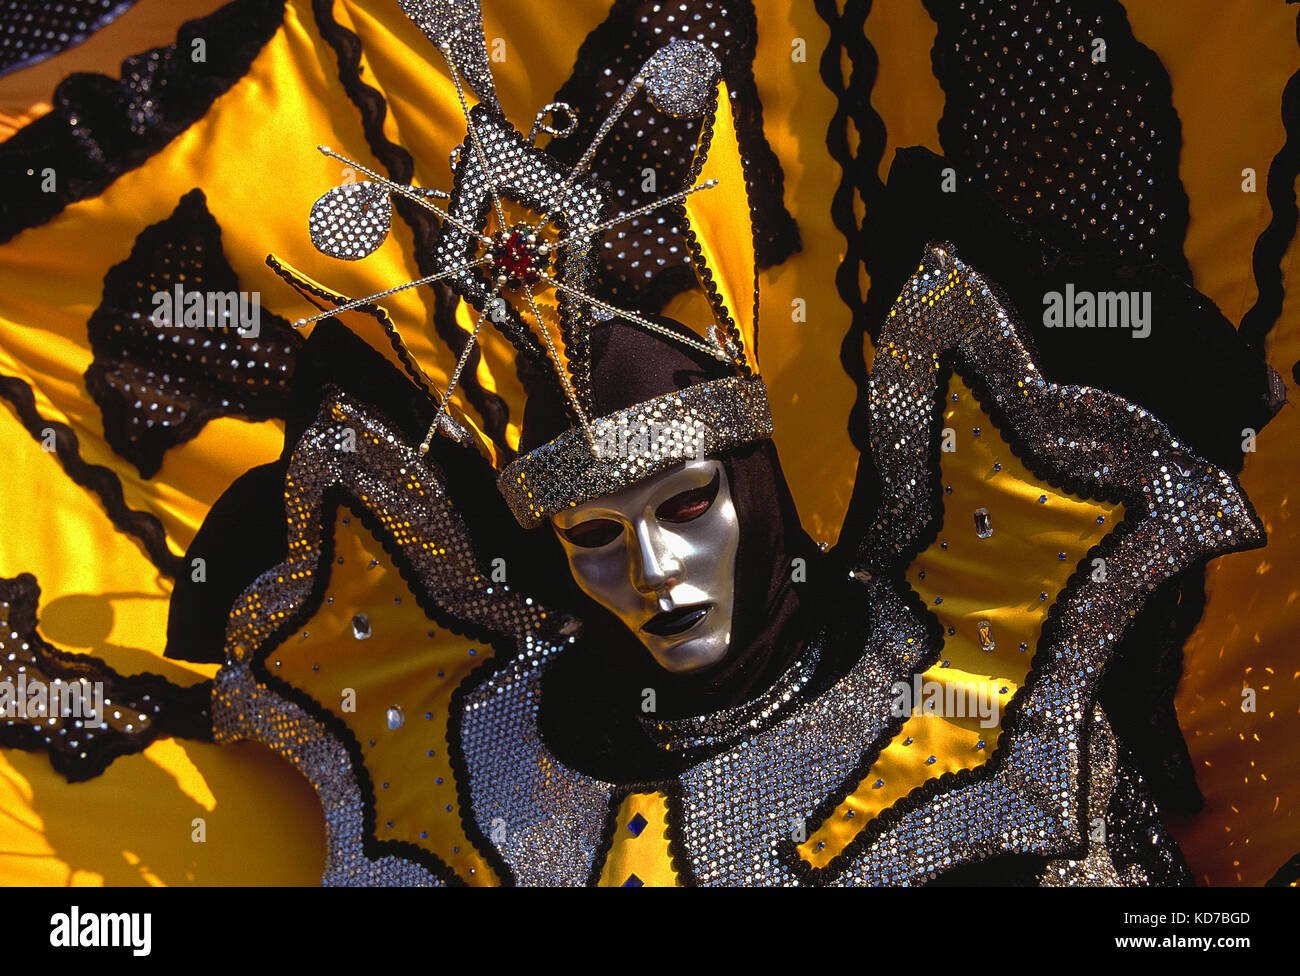 Italien. Venedig. Karneval. Person in Kostüm. Nahaufnahme des Gesichts mit silberner Maske. Stockfoto